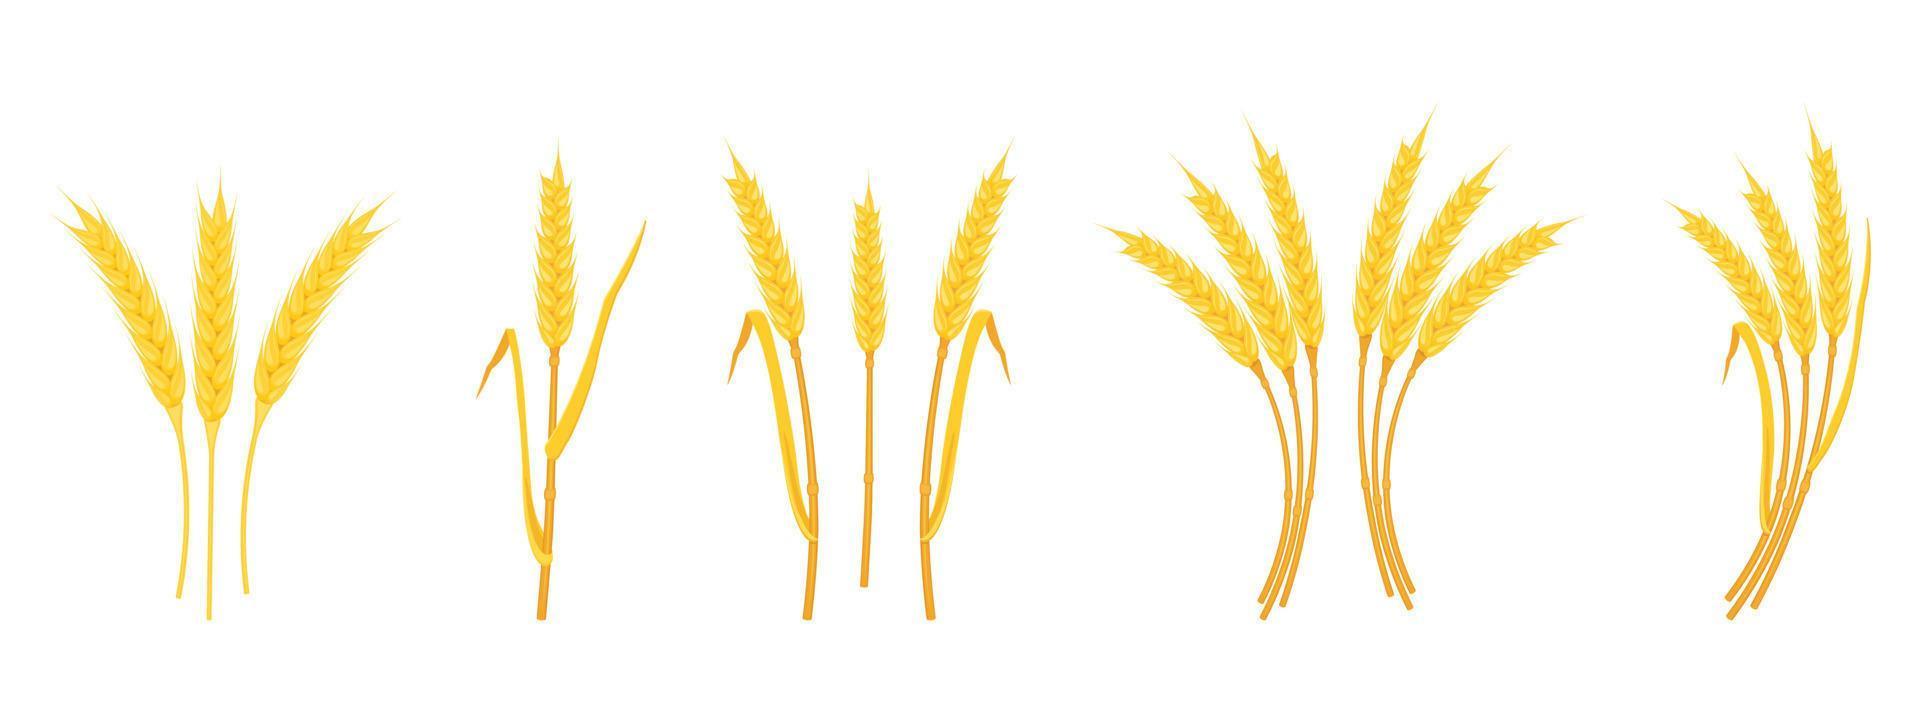 espigas de trigo con espigas y tallos de varias formas aisladas en fondo blanco. vector